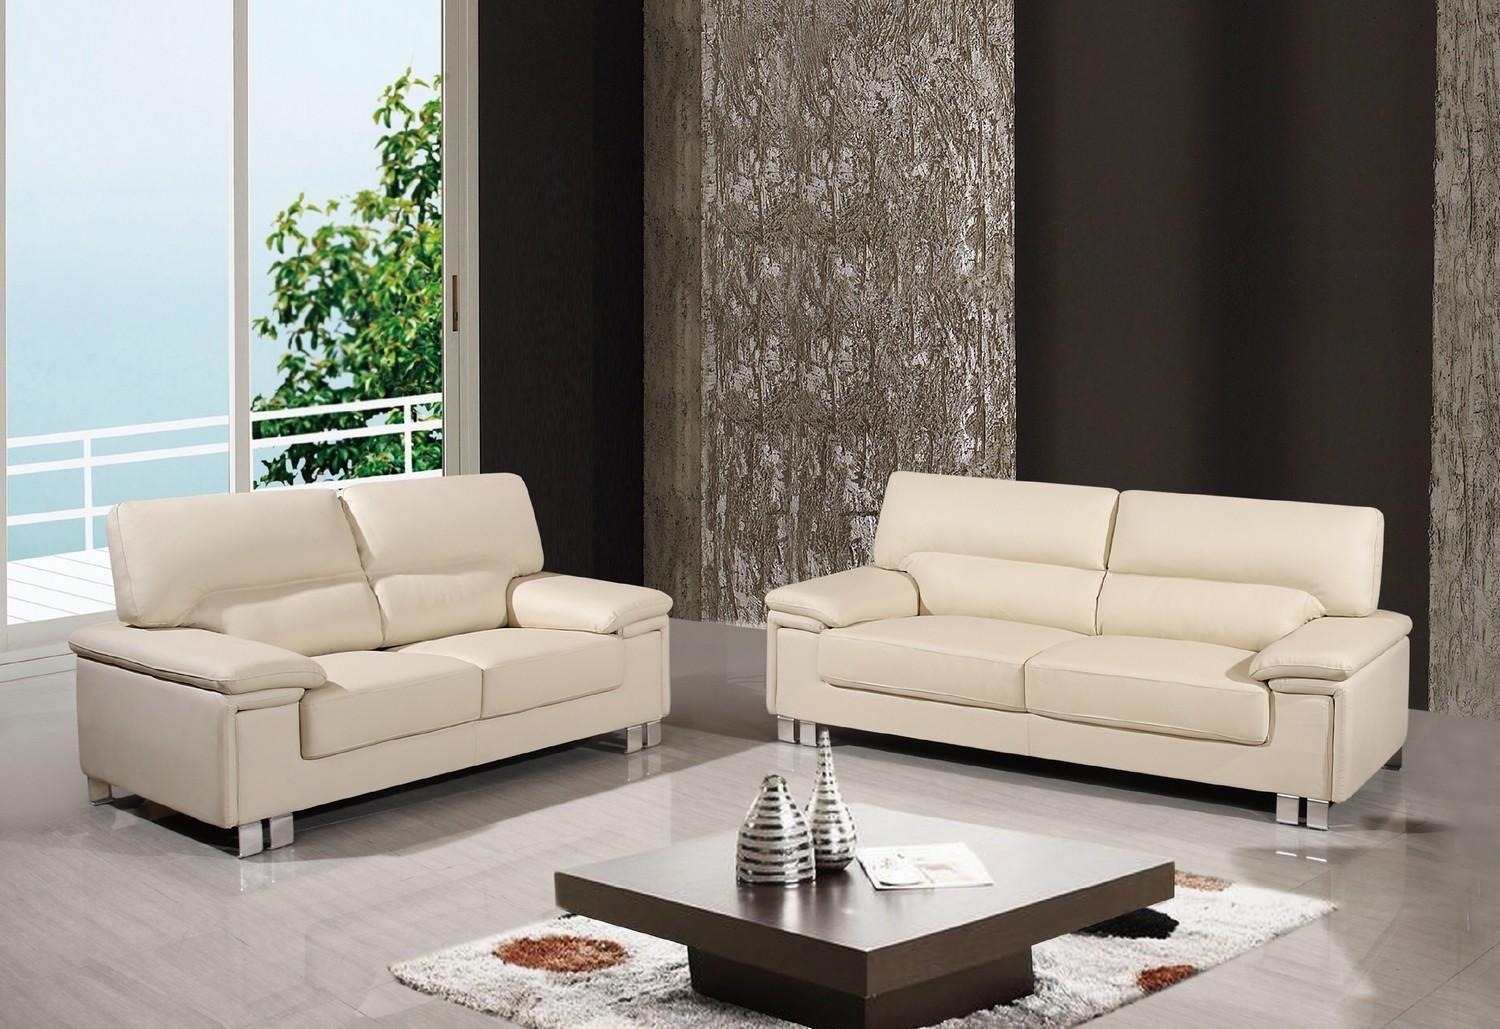 Contemporary Sofa and Loveseat Set U9399-BEIGE U9399-BEIGE-2-PC in Beige Leather Match